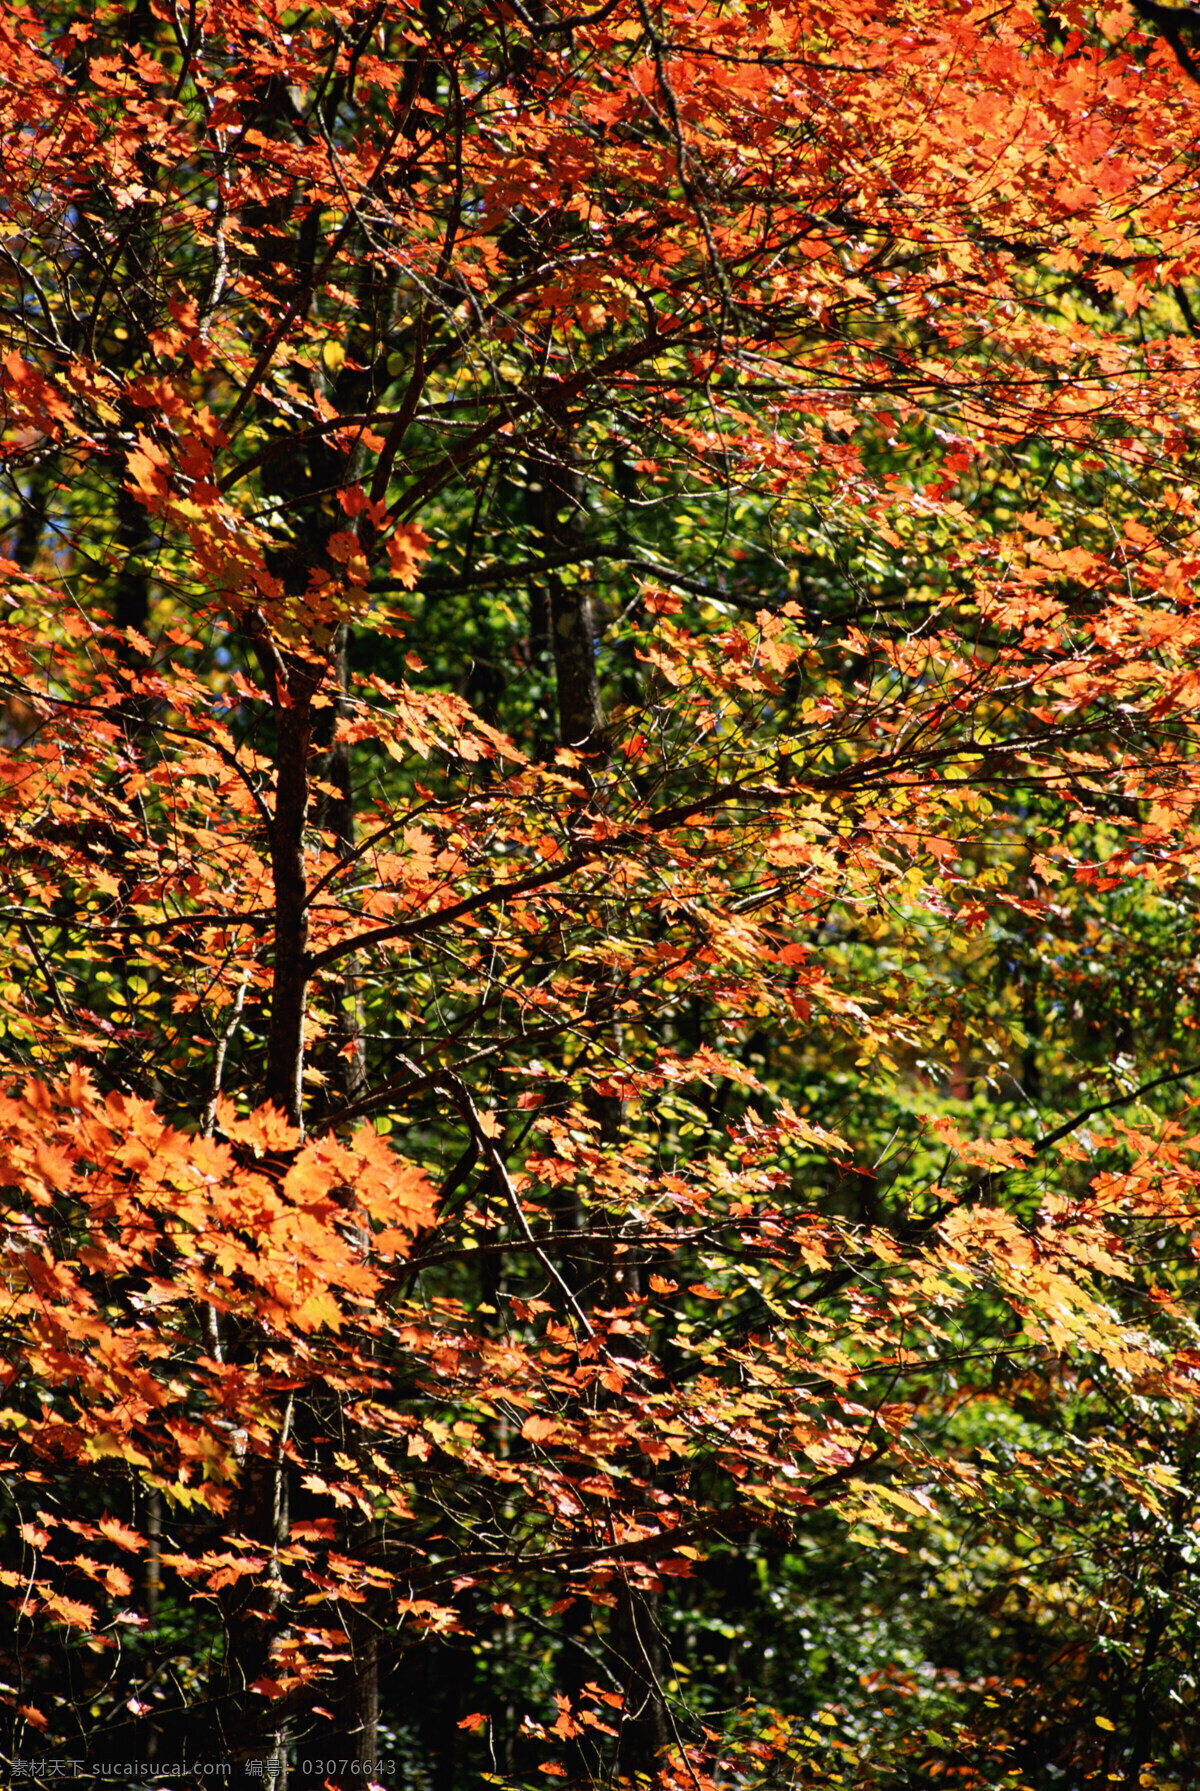 秋天 背景图片 秋天风景 秋景 秋天色彩 枫叶 叶子 树木 生态环境 野外 自然 自然生态 植物 户外 清新 自然风景 自然景观 花草树木 生物世界